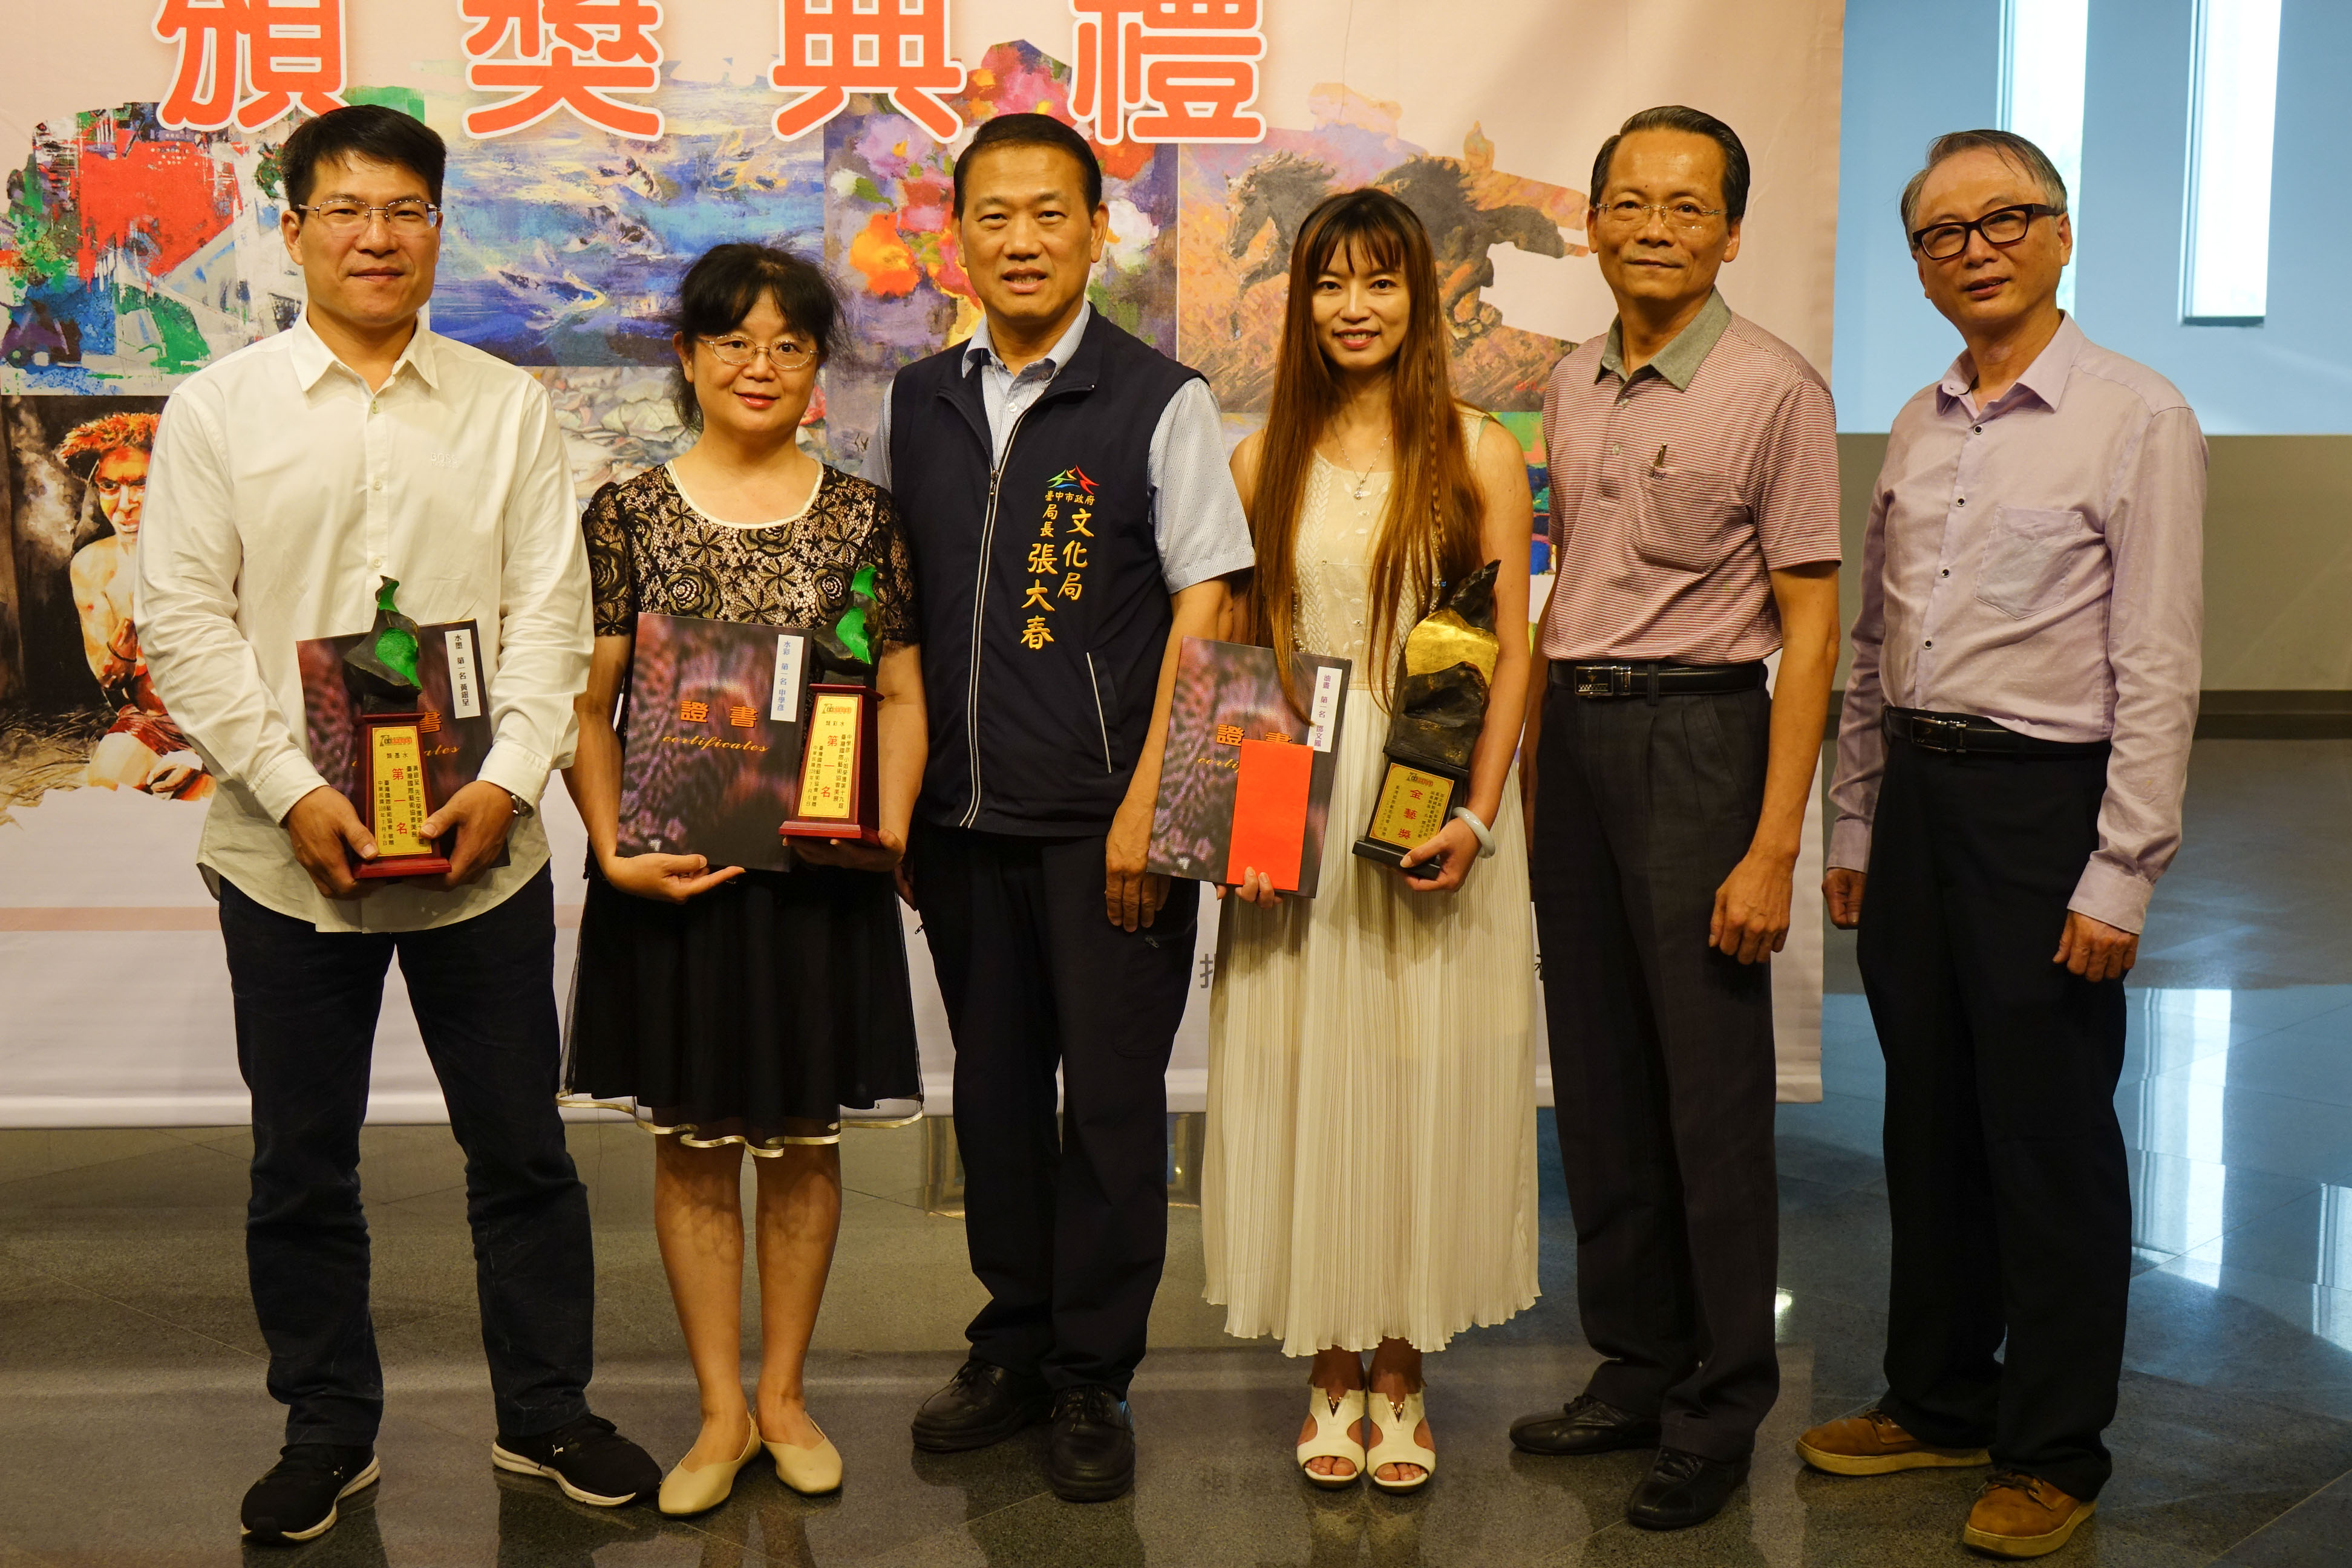 全國藝術創作徵件及臺中市學生競賽得獎作品齊聚屯藝  藝術深度廣度的精采呈現